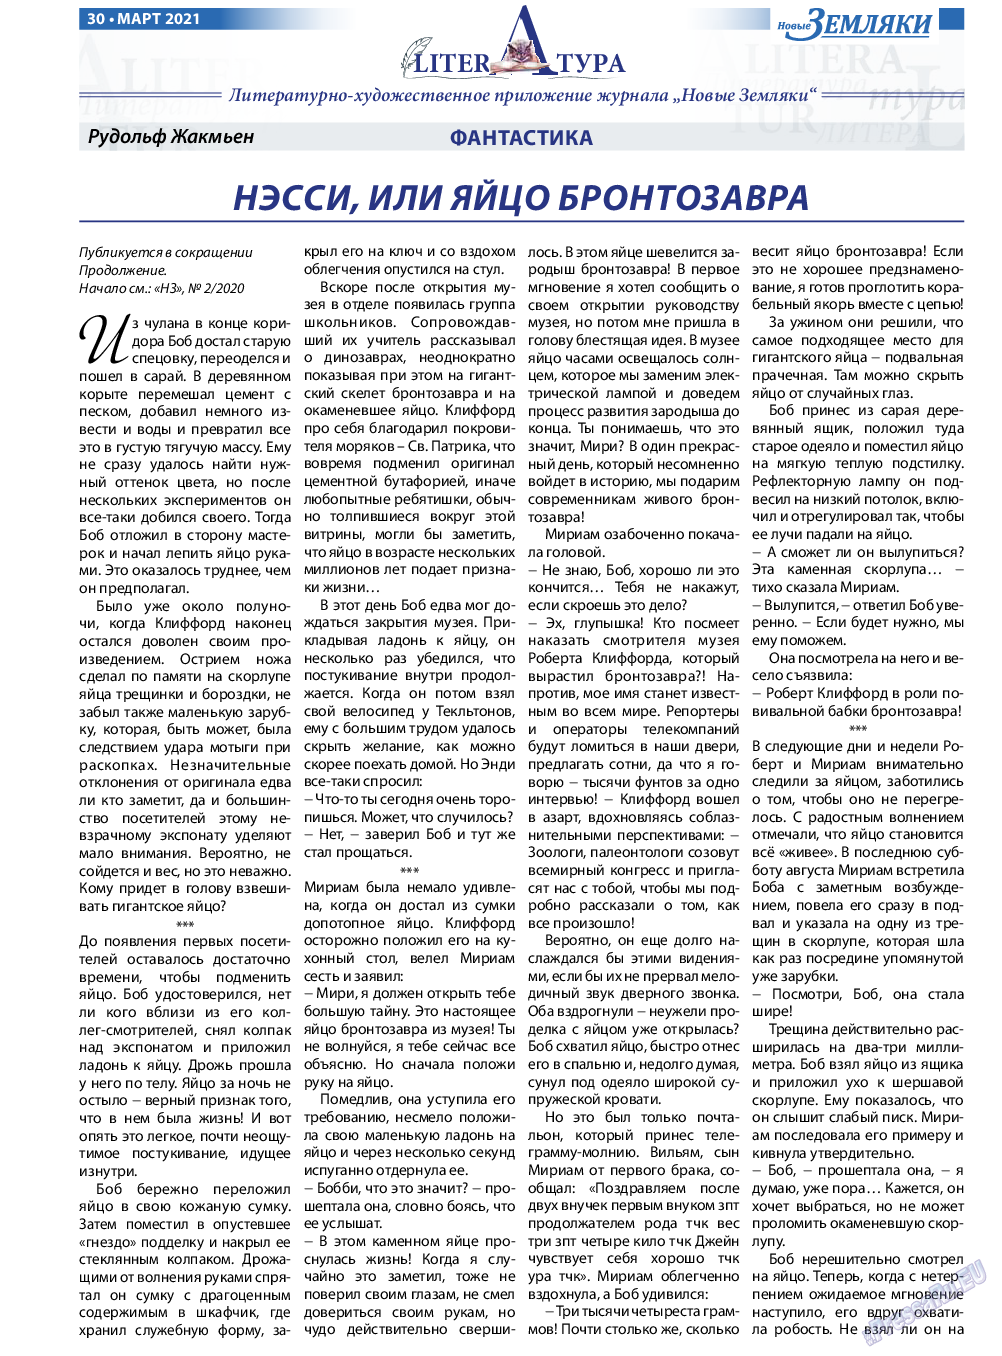 Новые Земляки, газета. 2021 №3 стр.30